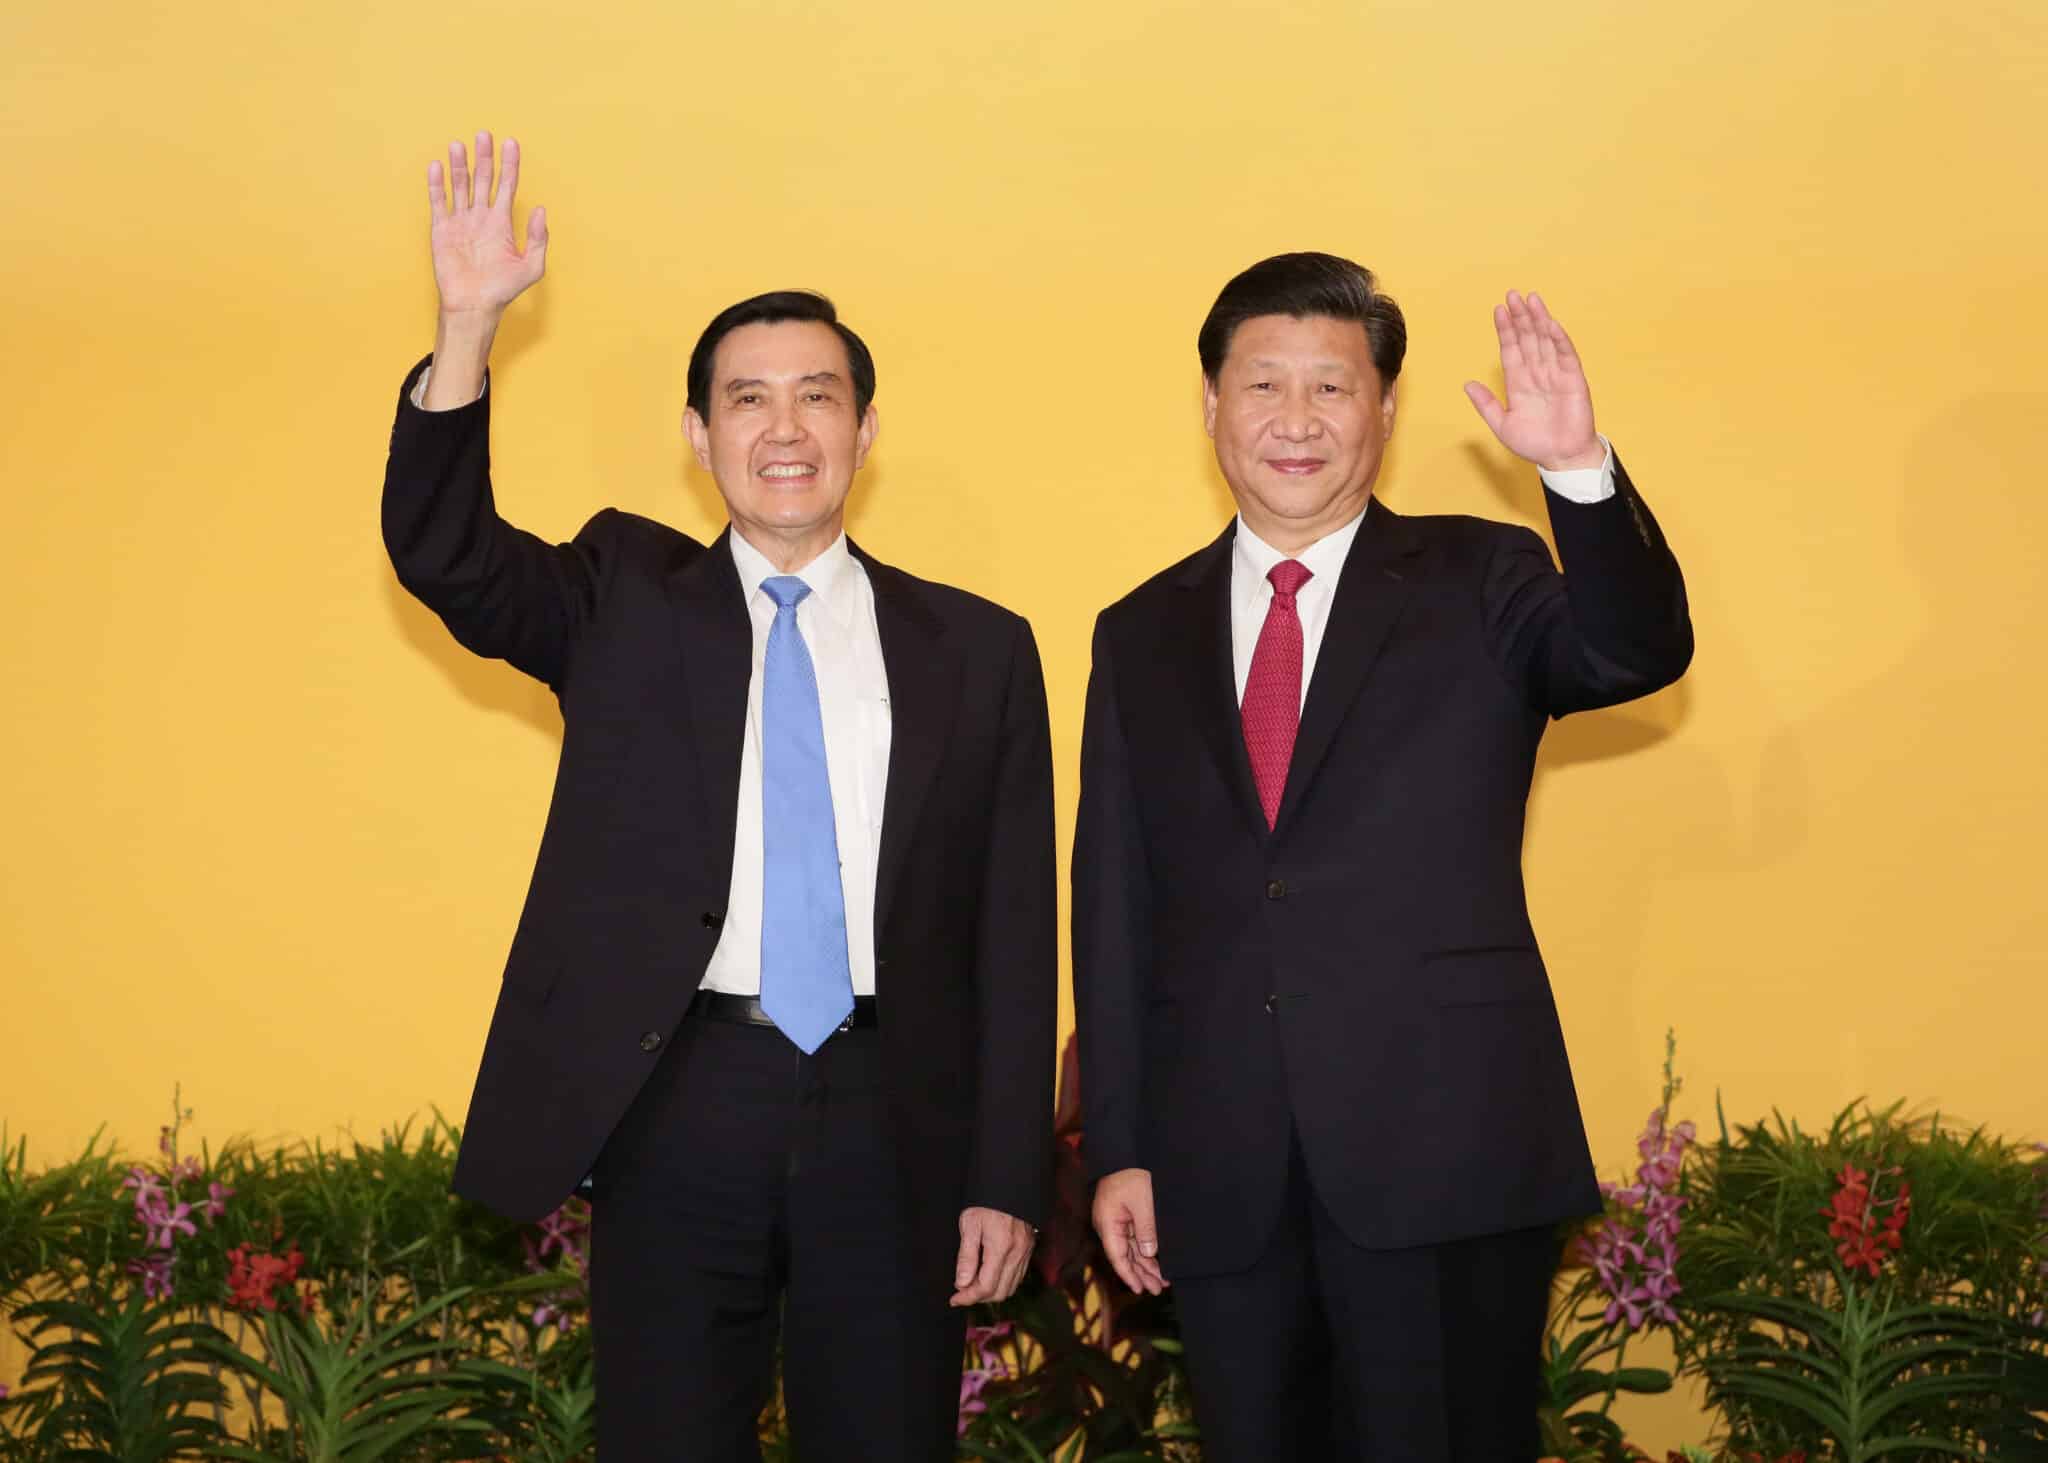 Ma Ying jeou Xi Jinping scaled - News Moldova